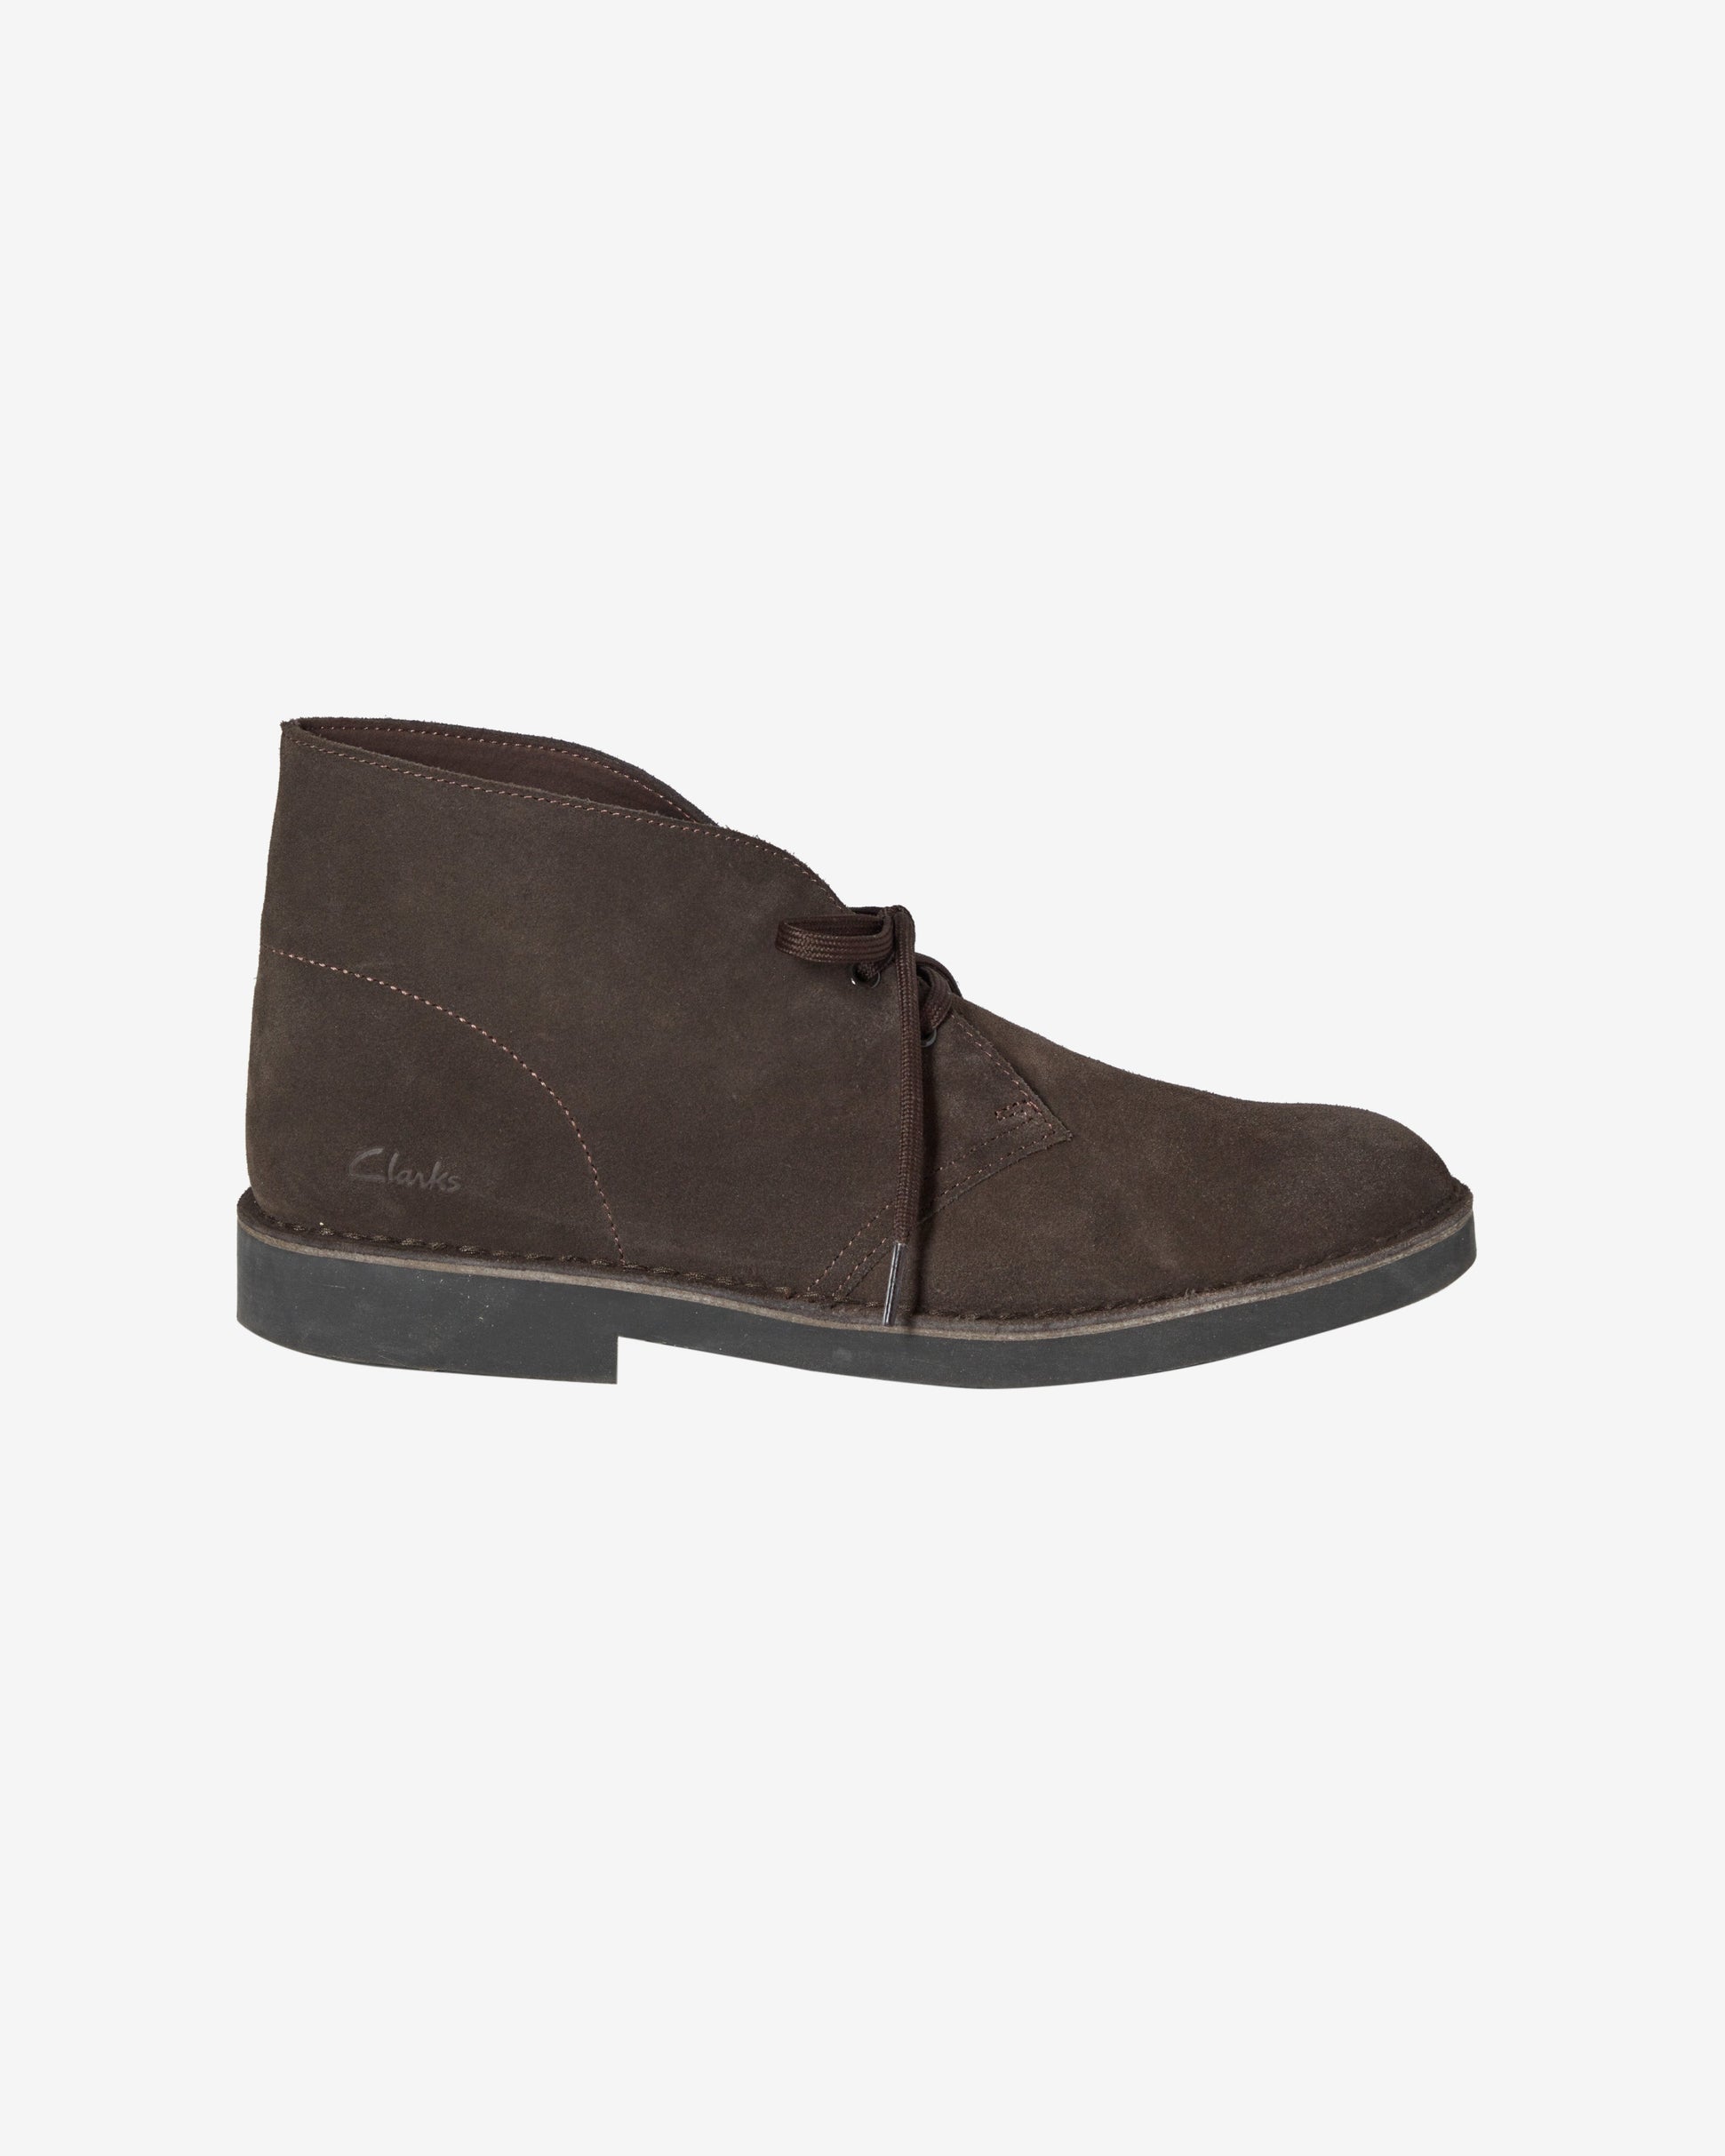 CLARK'S DESERT BOOT Shoes - Dark Brown